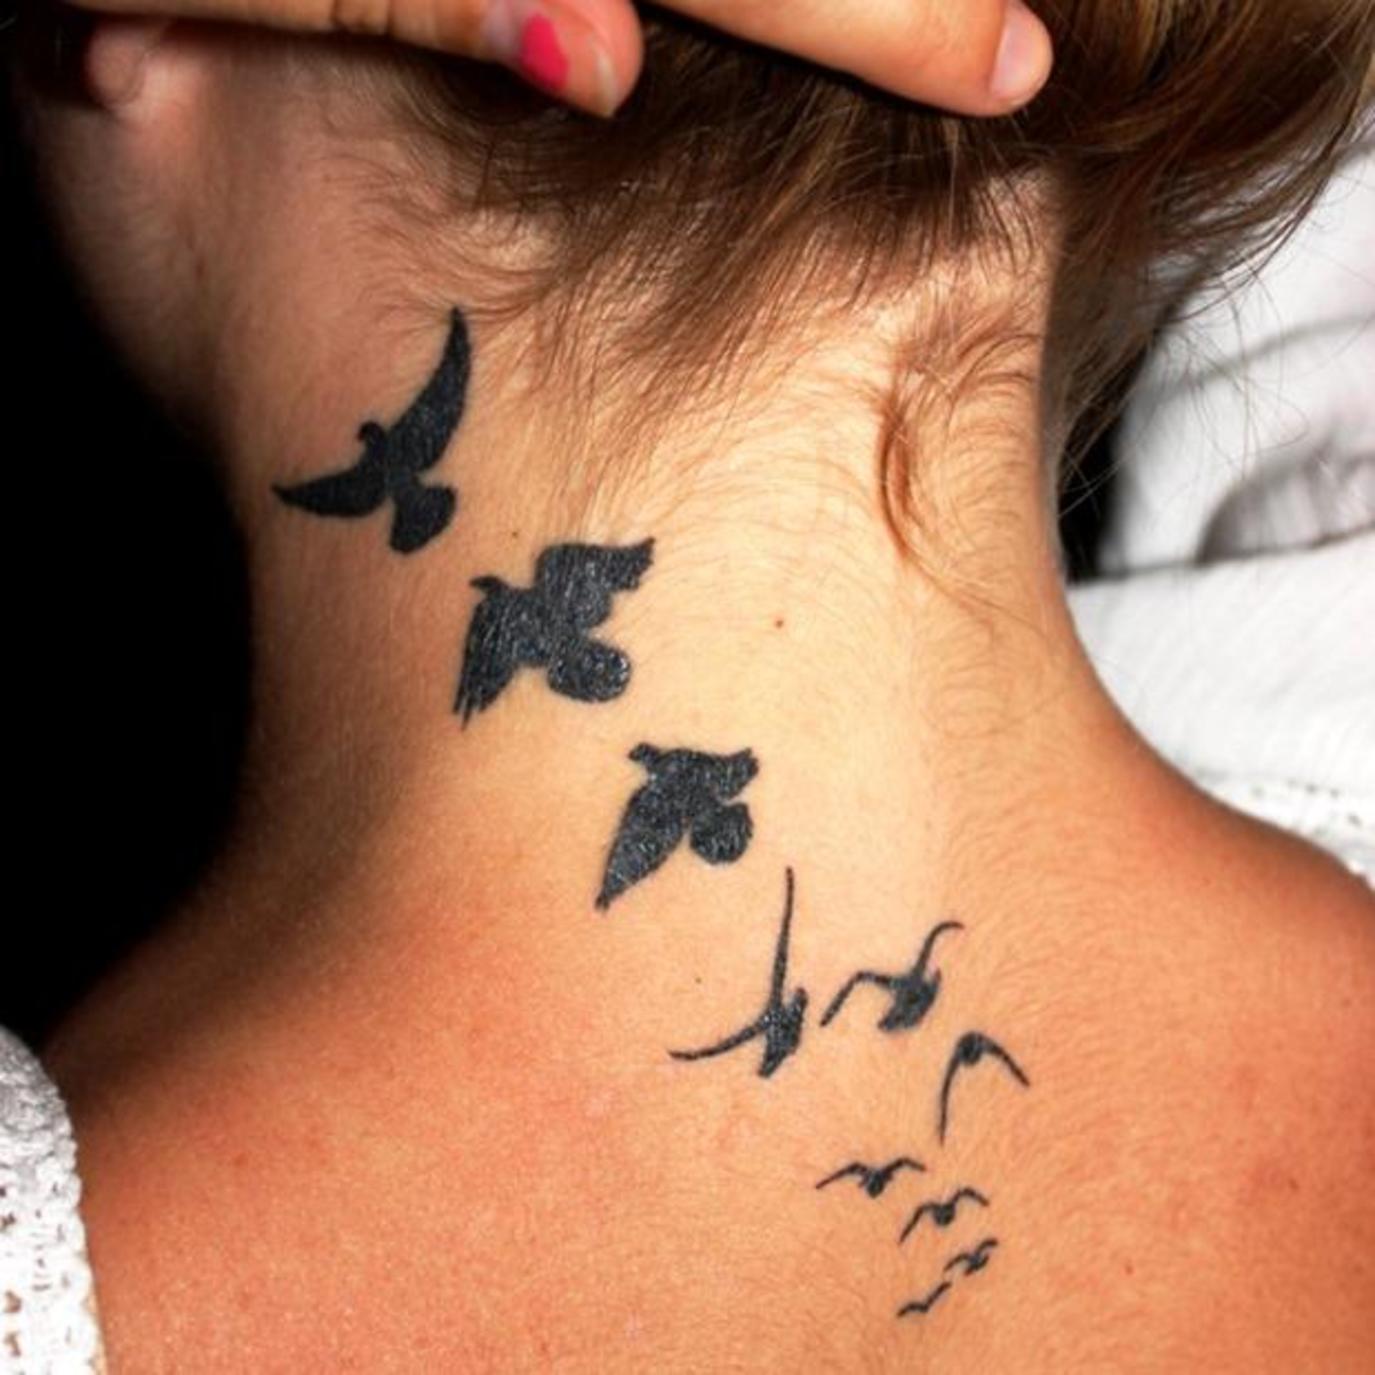 татуировка на спине девушки птицы